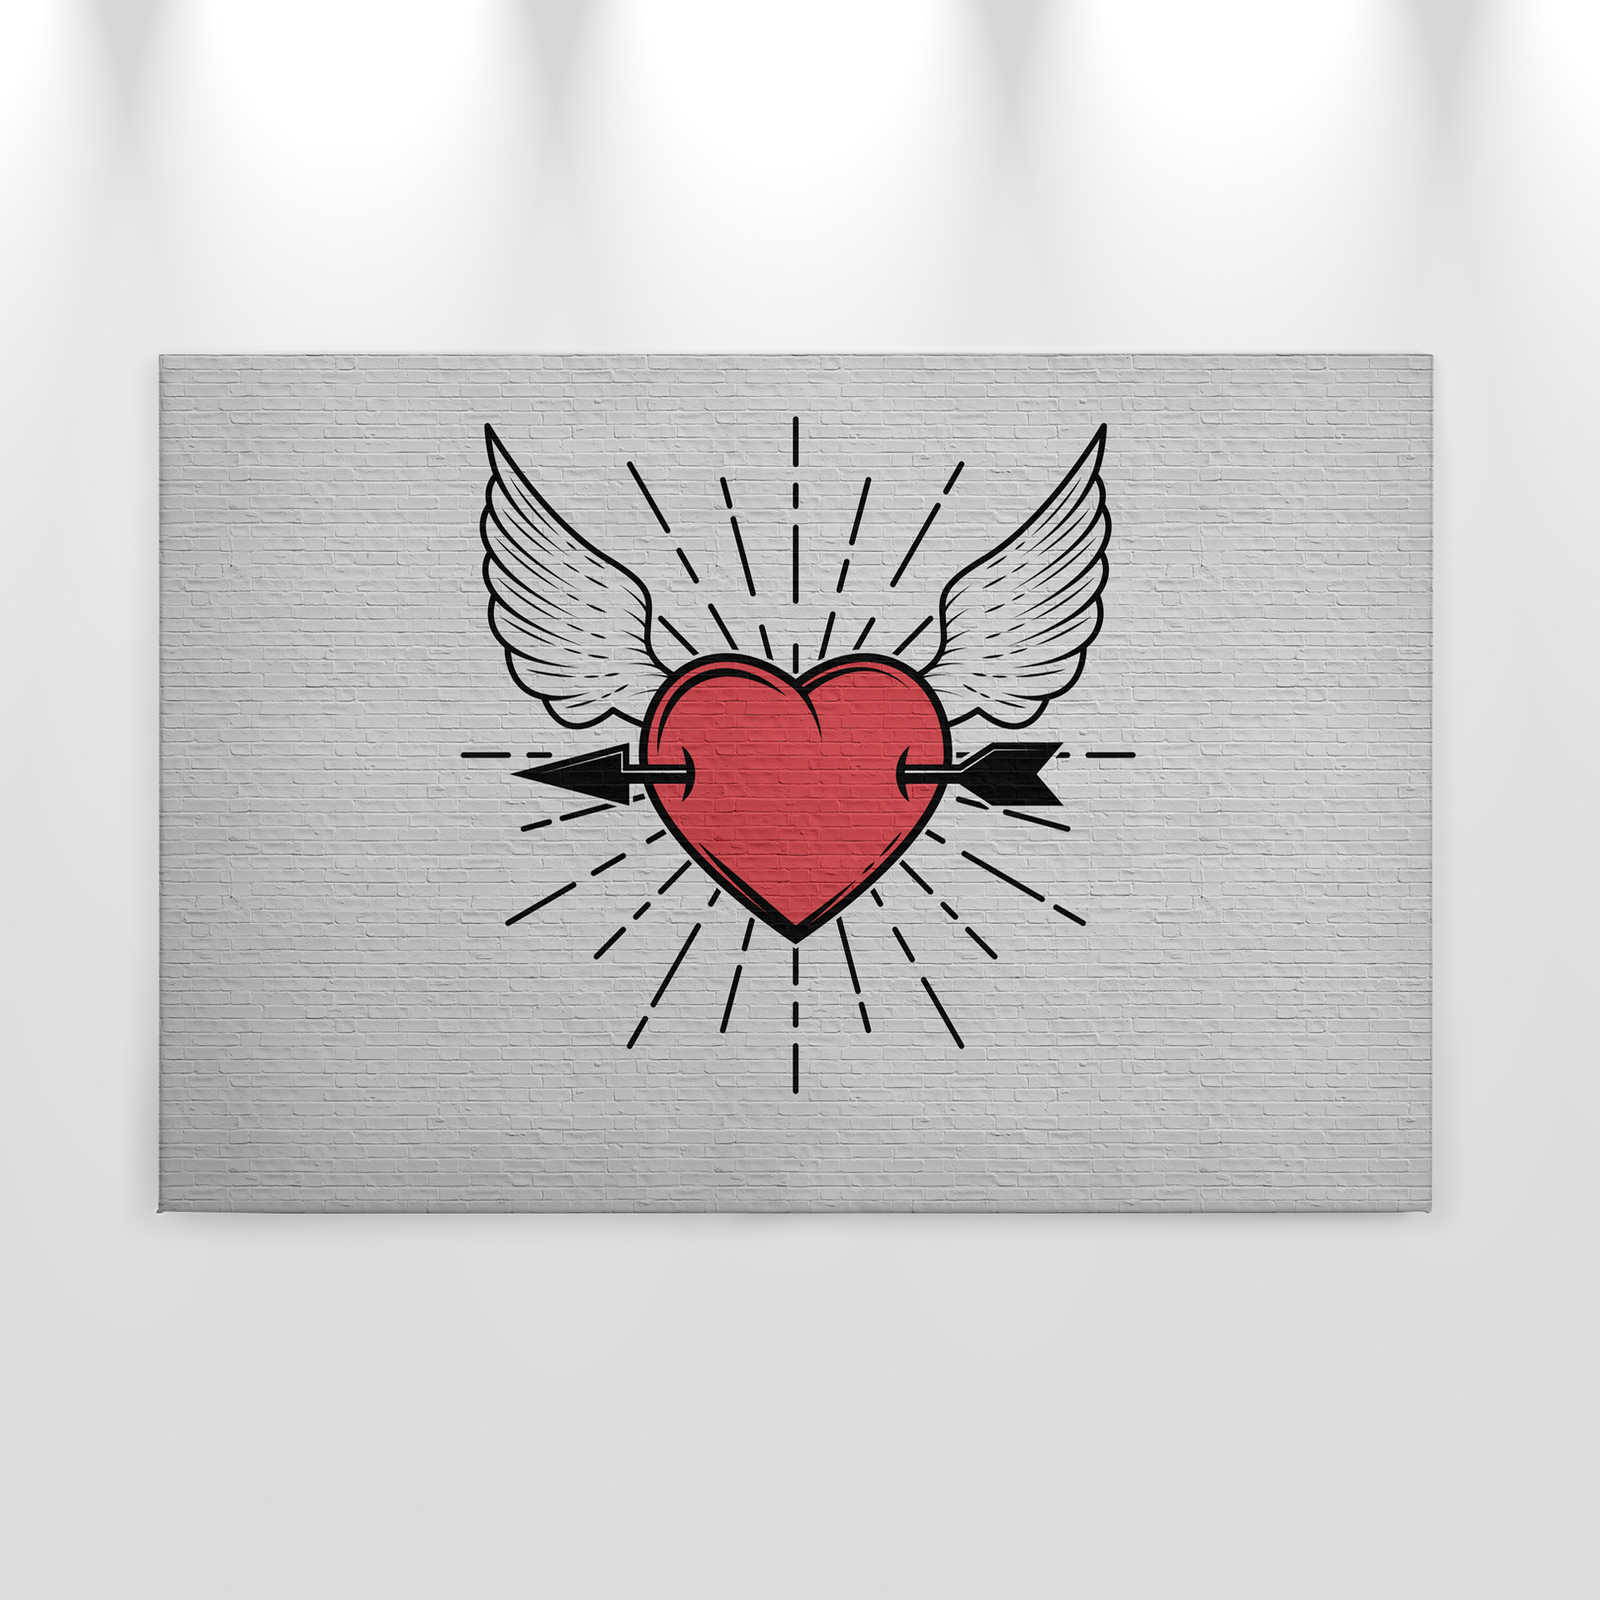             Tattoo you 1 - Rockabilly stijl canvas print, hart motief - 0.90 m x 0.60 m
        